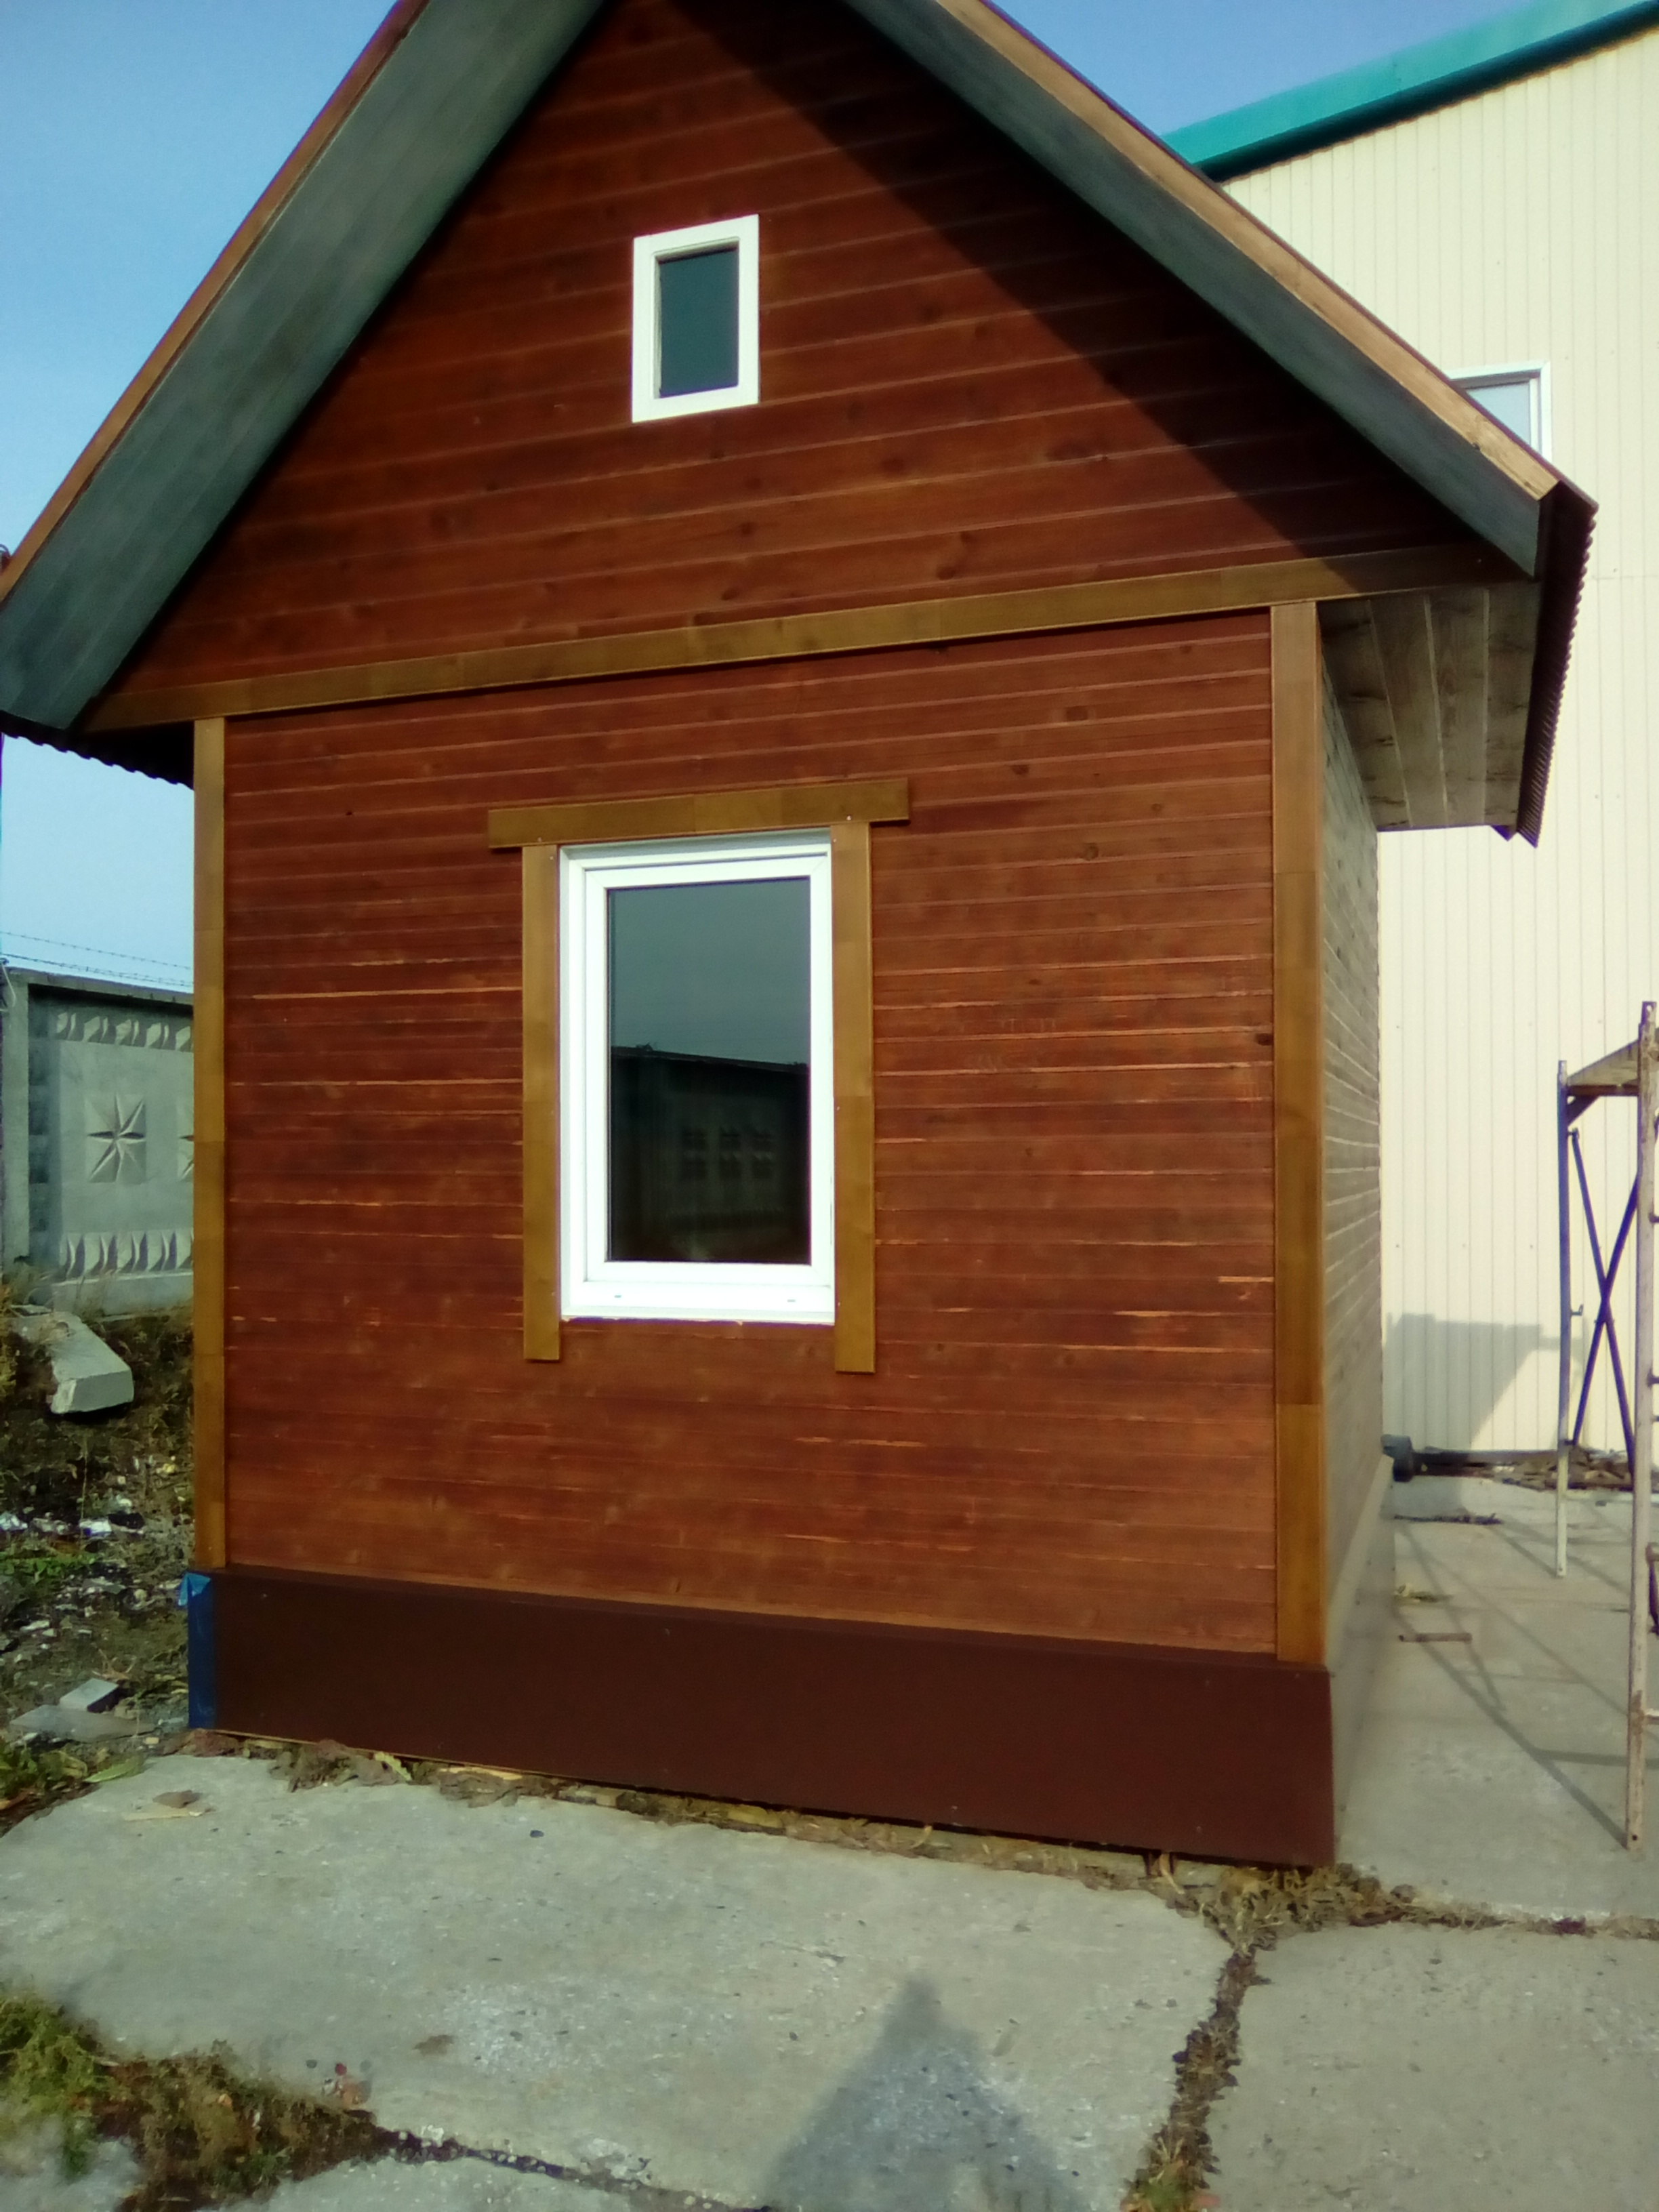 "Алтайский Теплый Дом" - принципиально новая технология деревянного домостроения